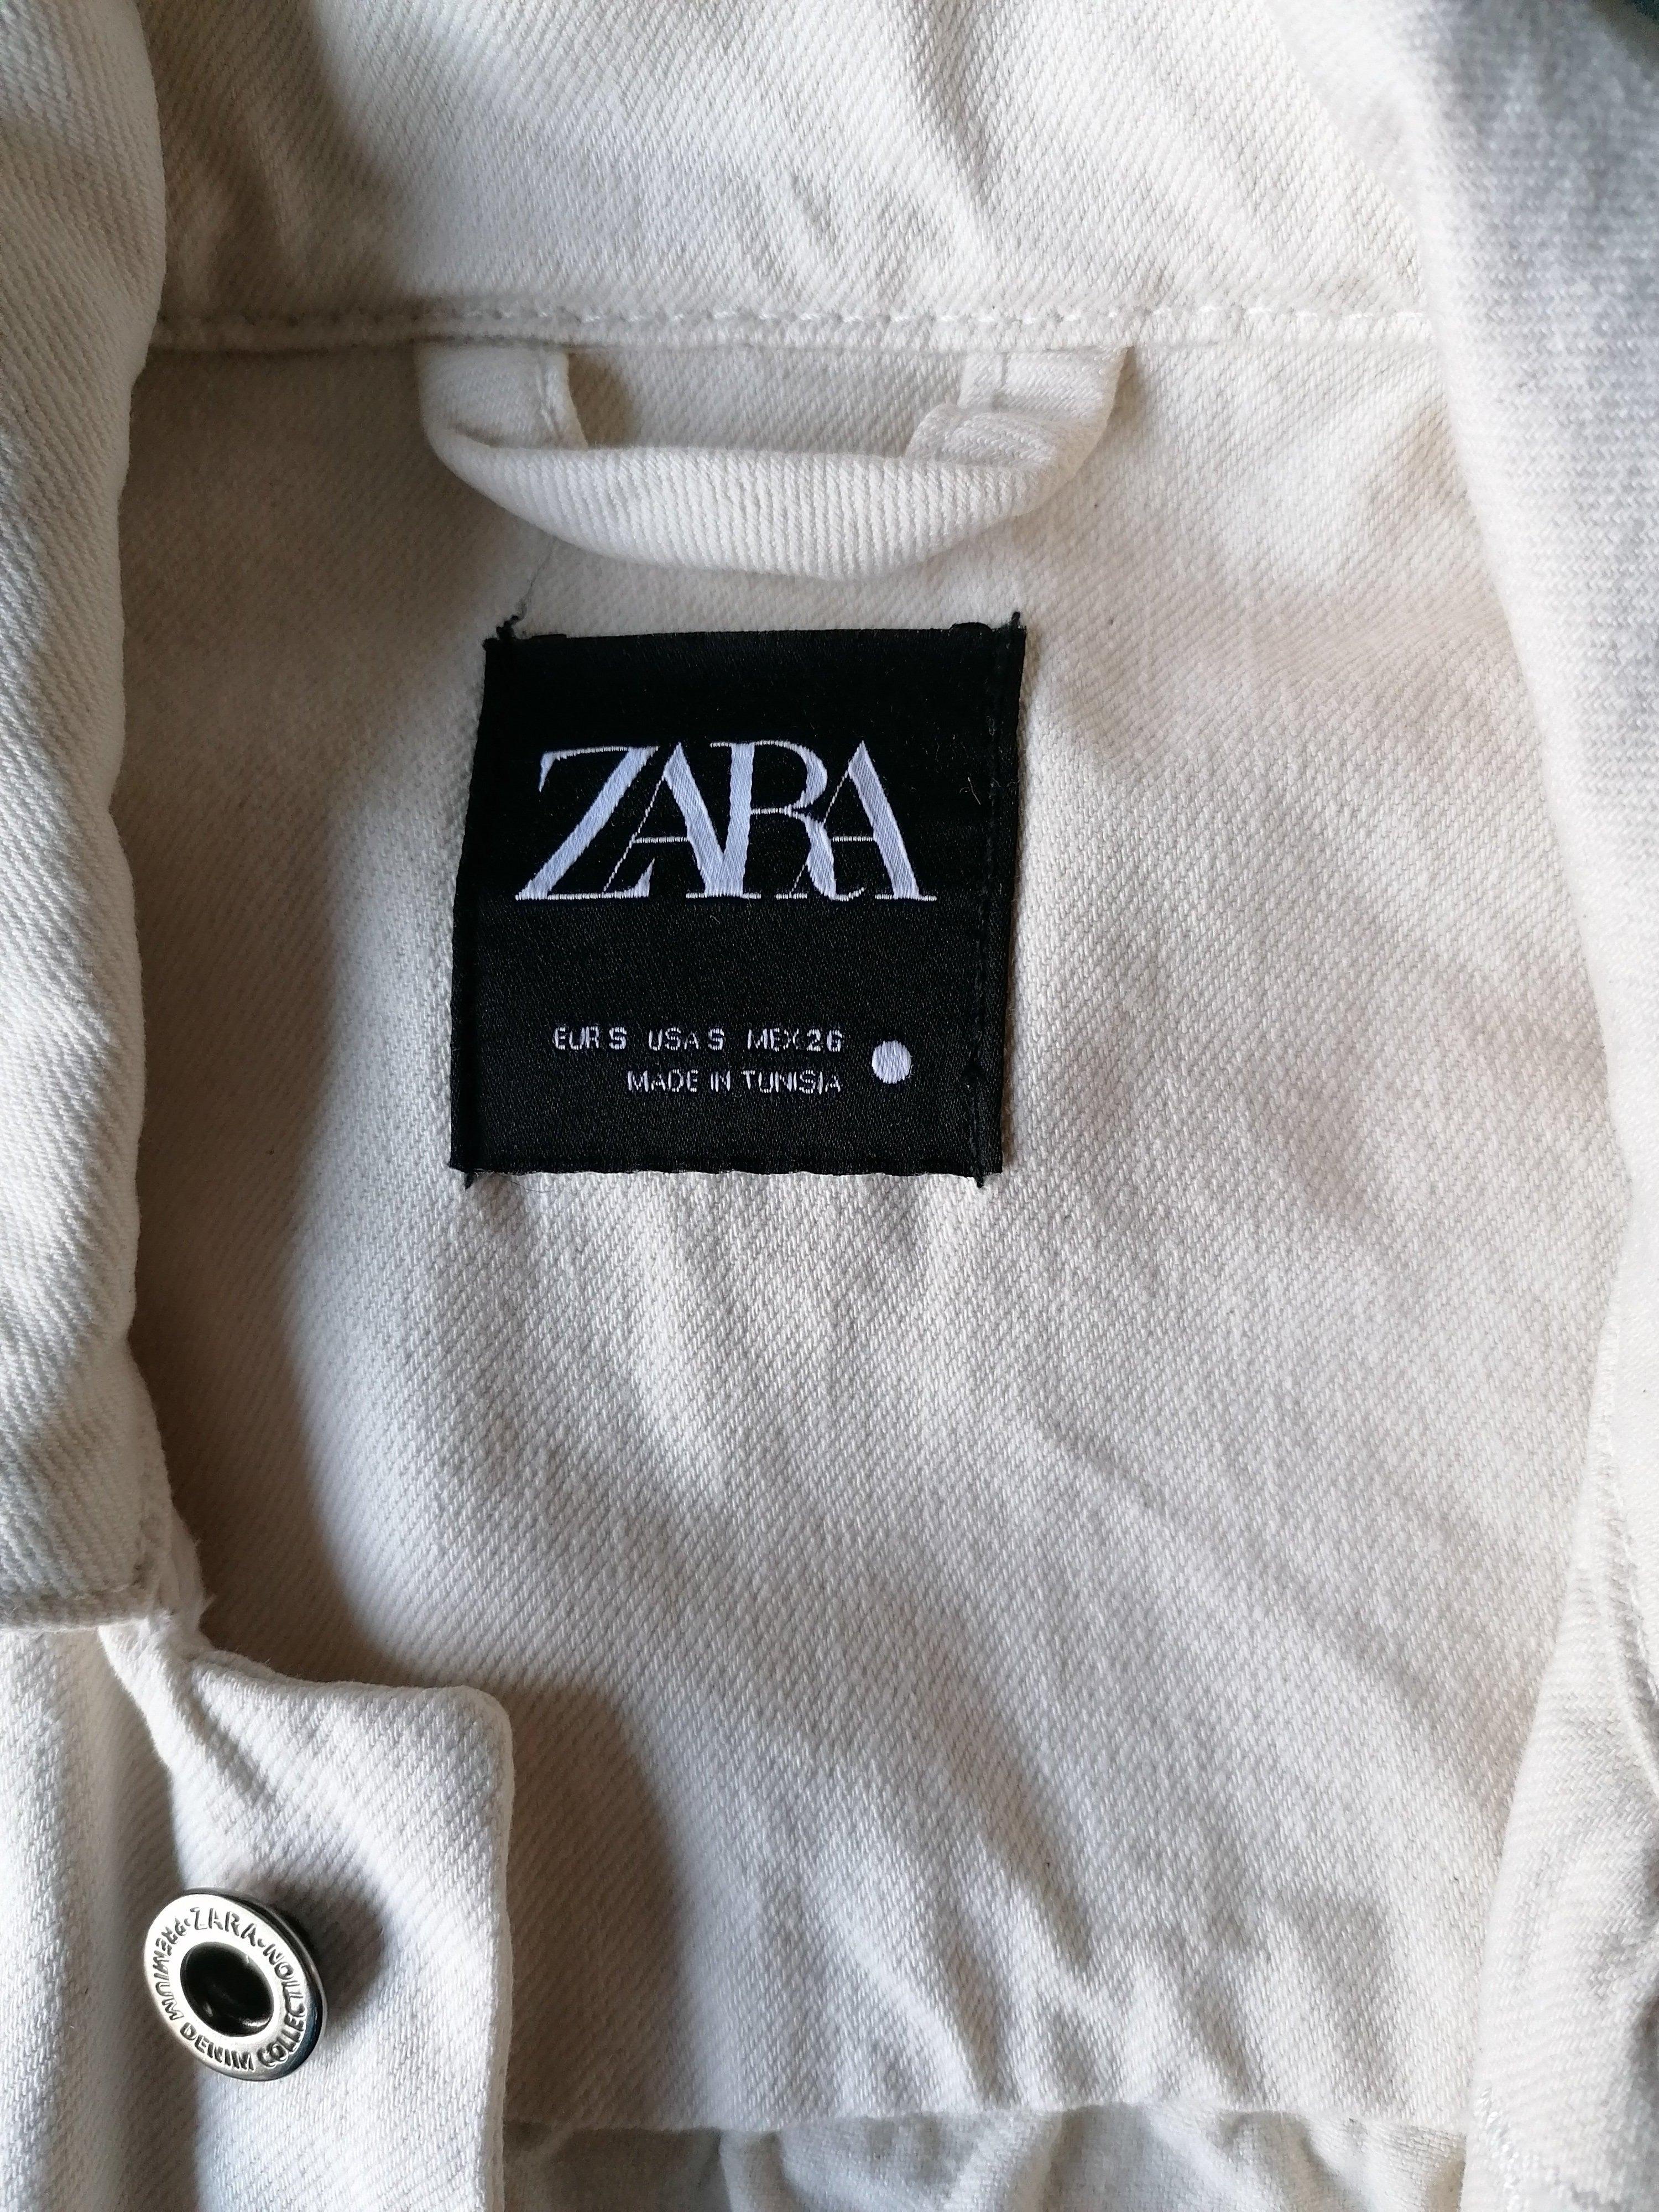 B keus: Zara Oversized spijkerjack. Beige gekleurd. Maat S. vlekje EcoGents